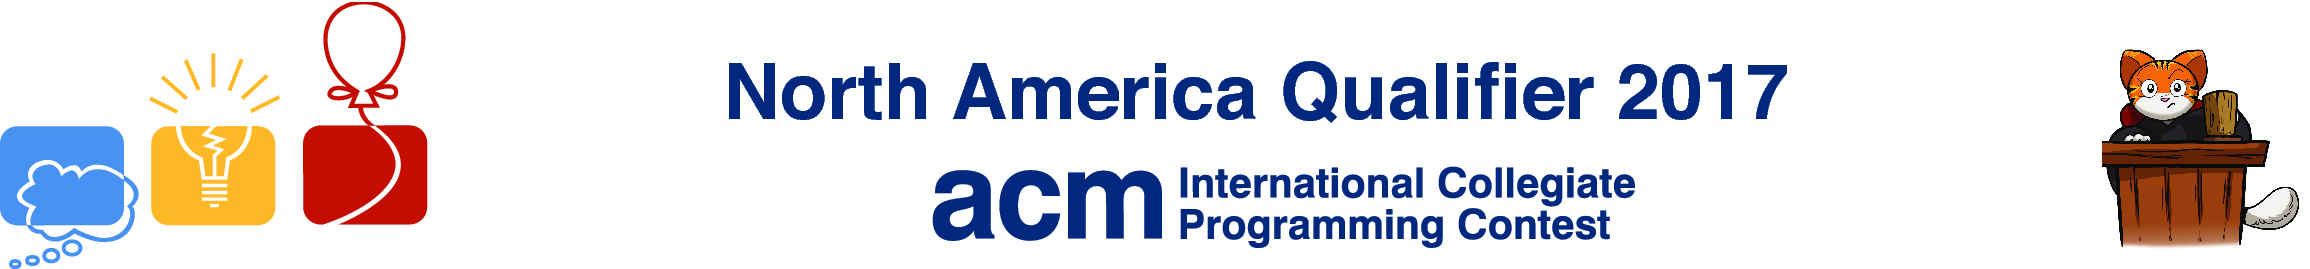 ICPC North America Qualifier 2017